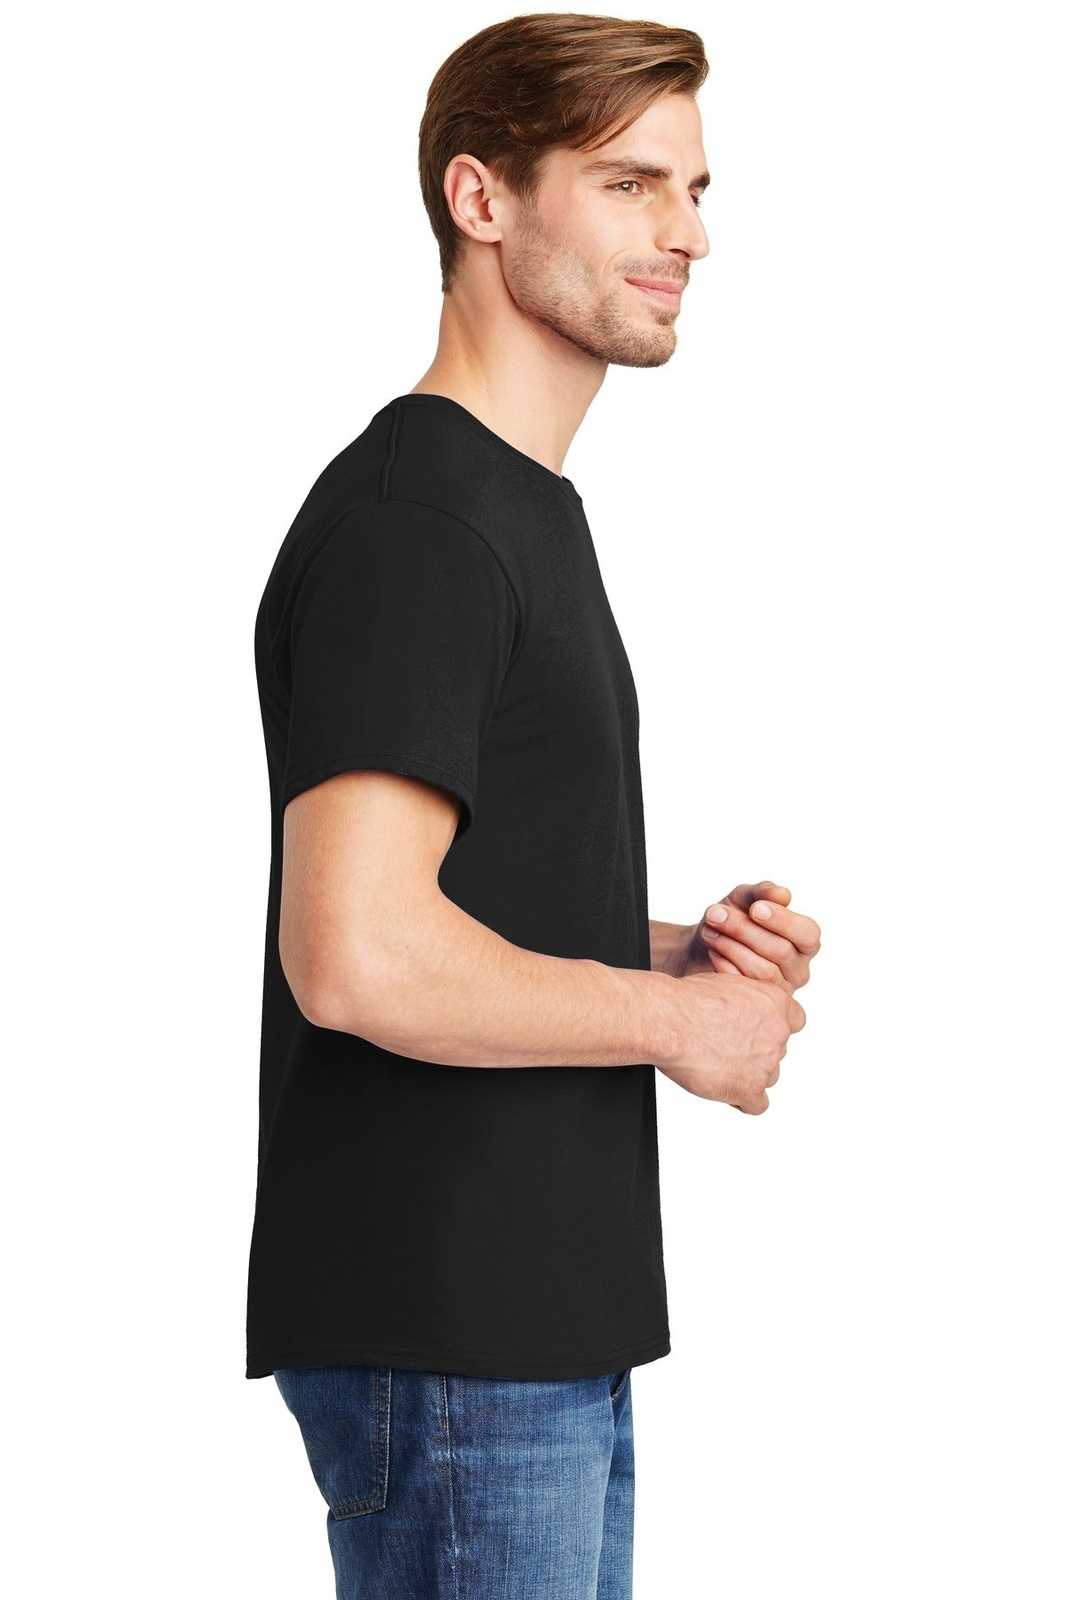 Hanes 5280 Comfortsoft 100% Cotton T-Shirt - Black - HIT a Double